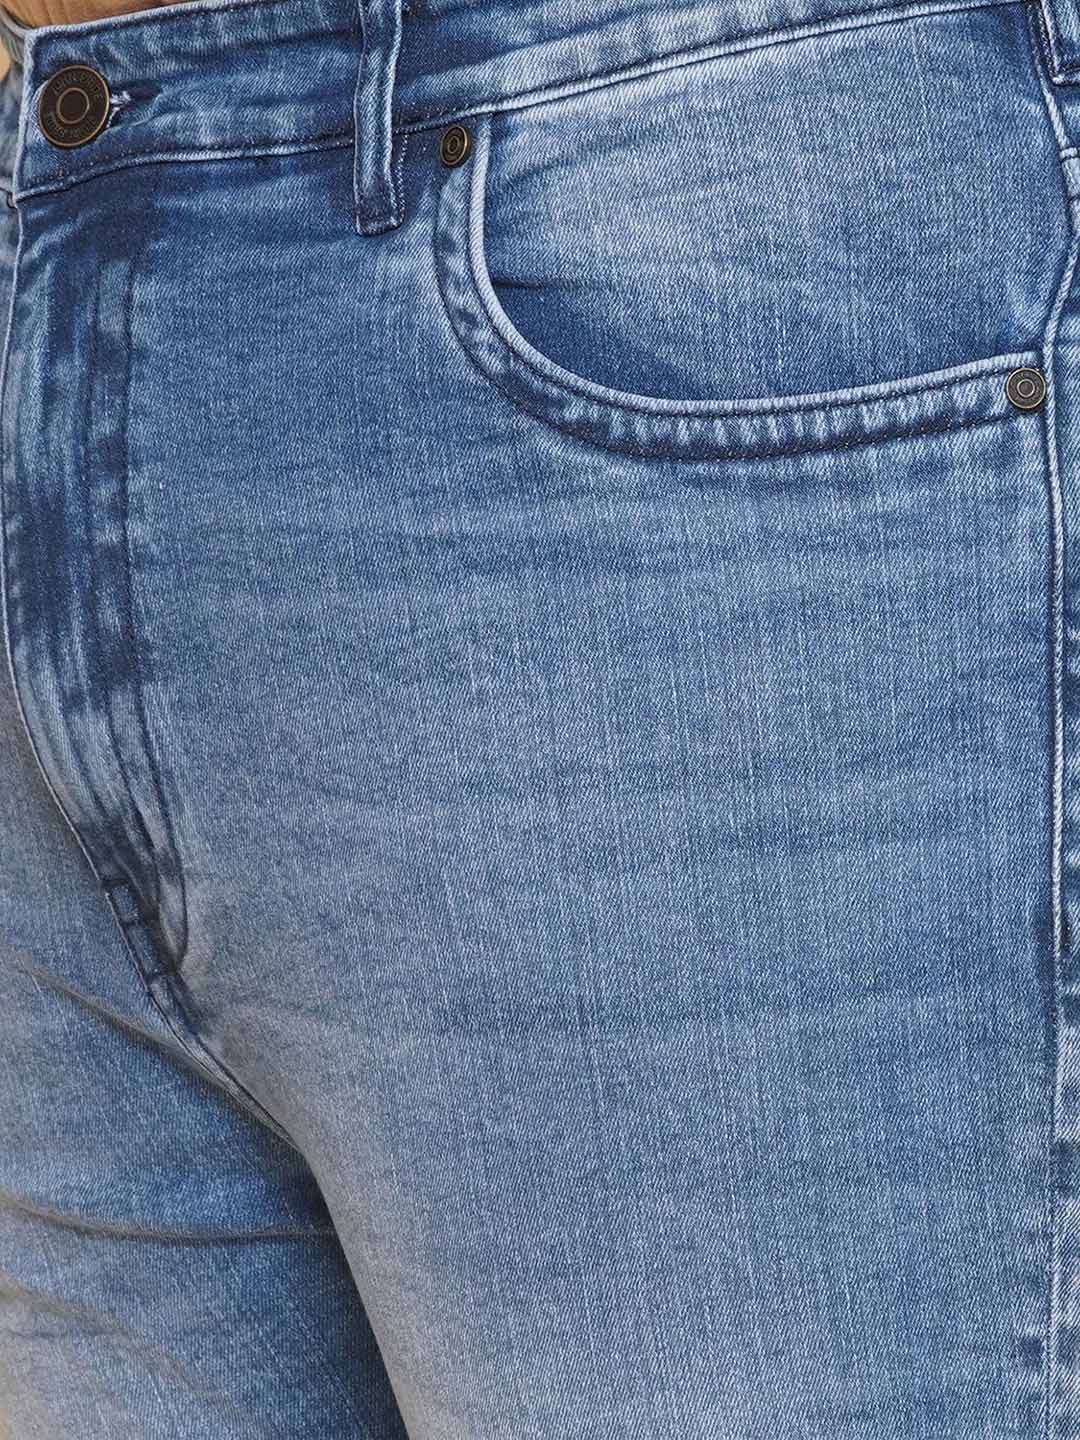 bottomwear/jeans/JPJ27106/jpj27106-2.jpg